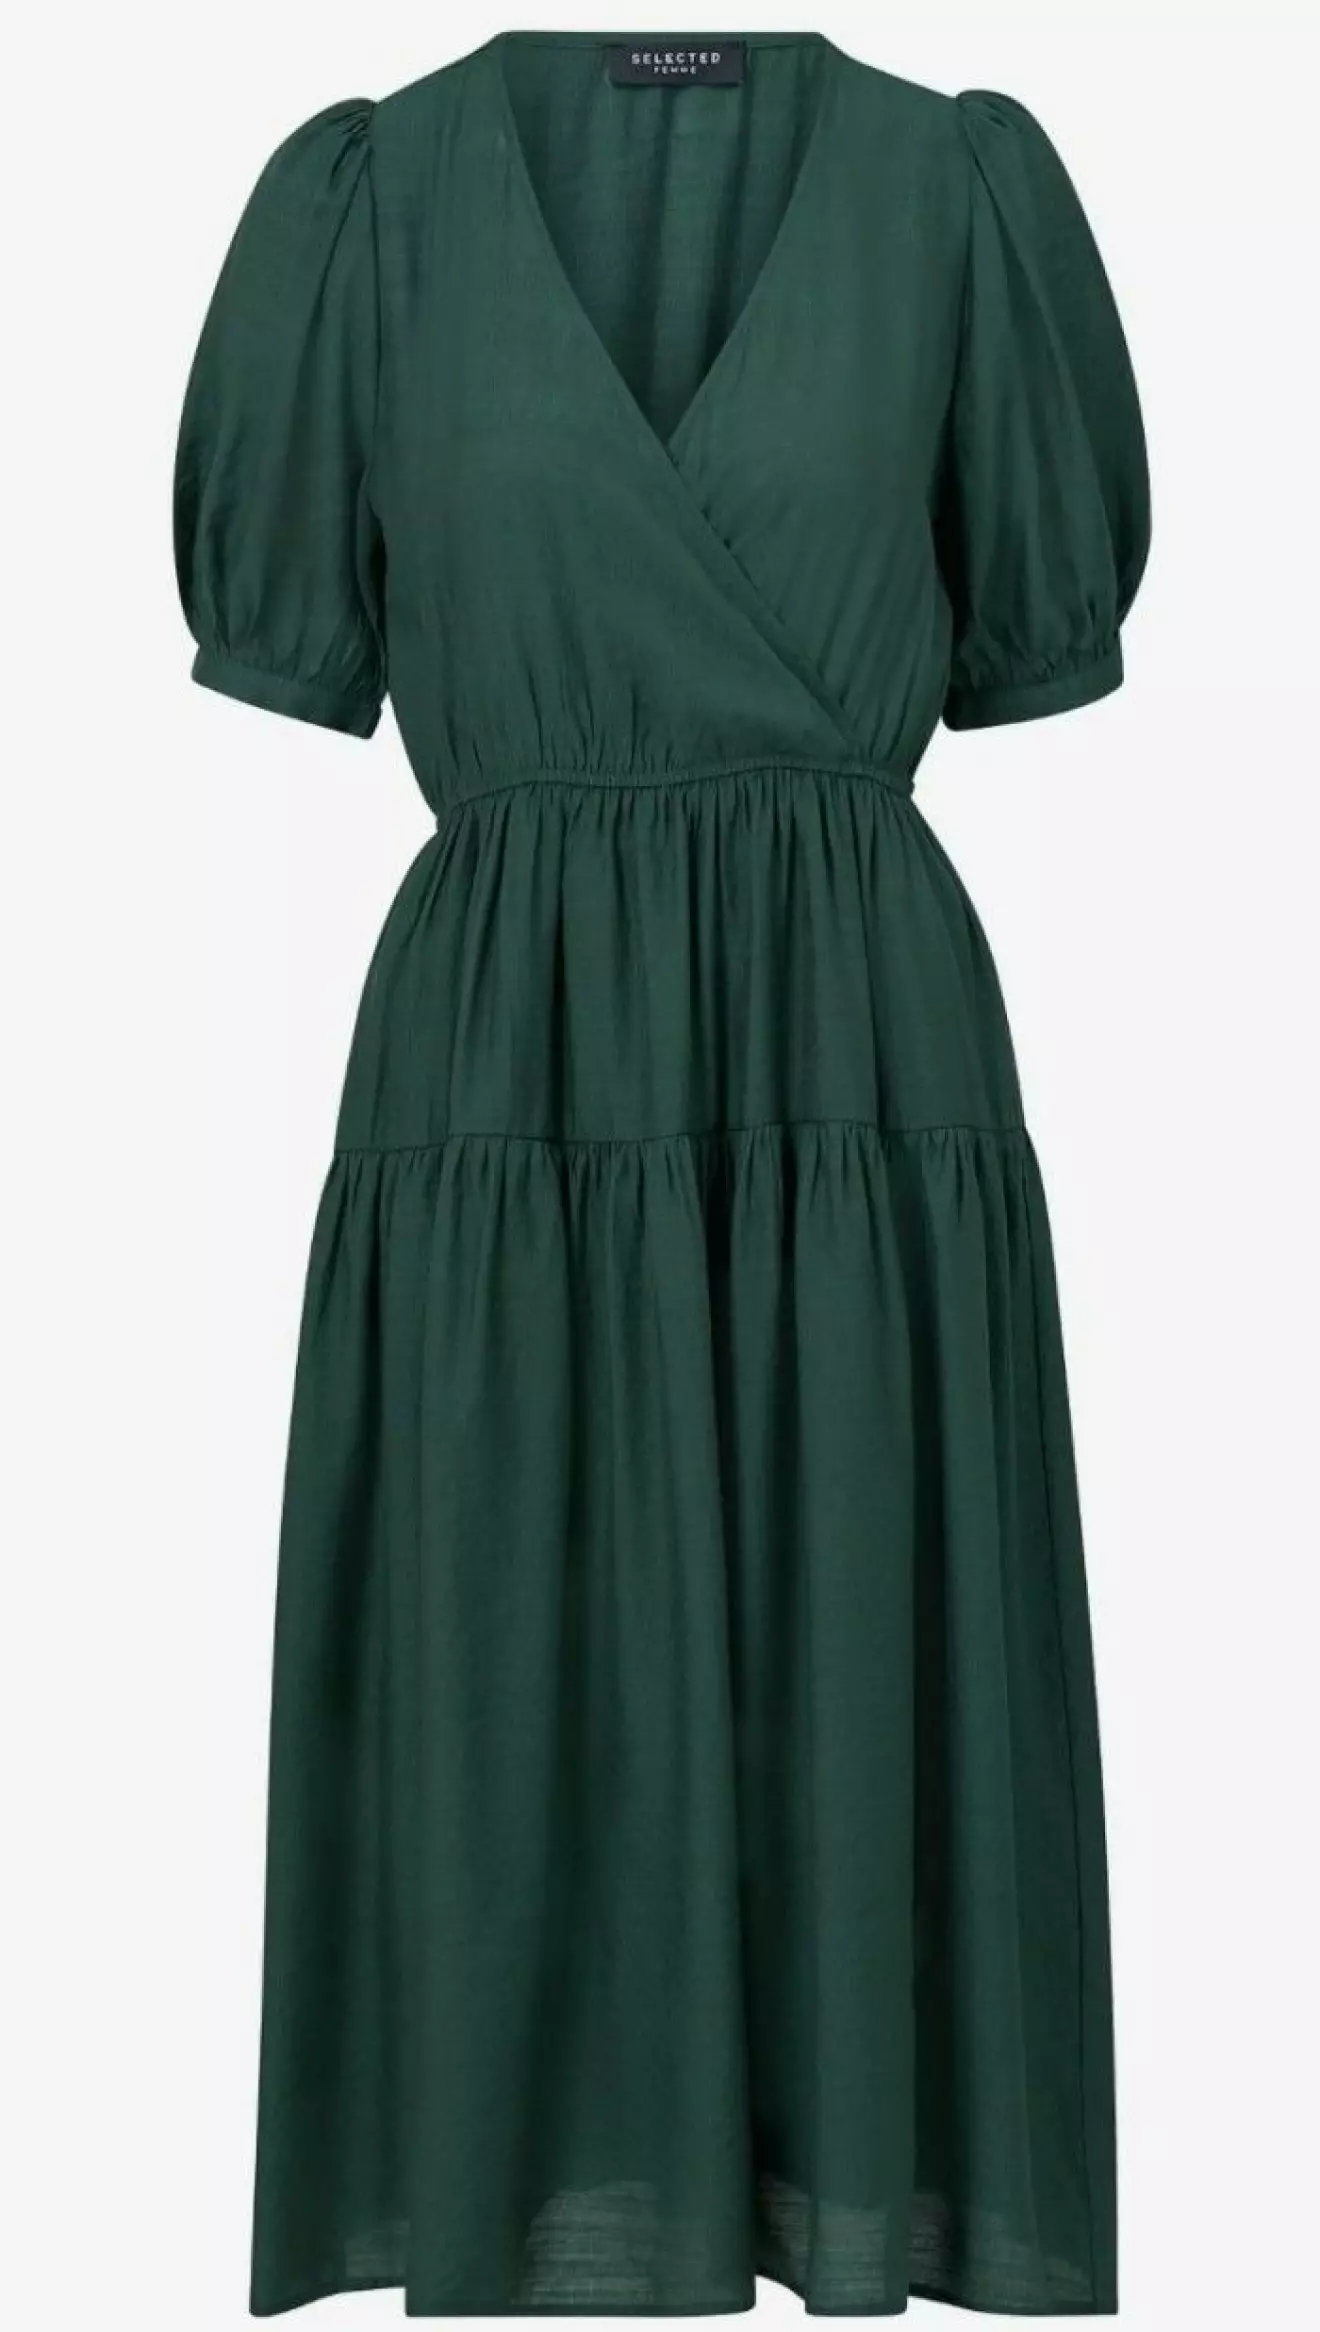 Grön klänning med omlottliv.